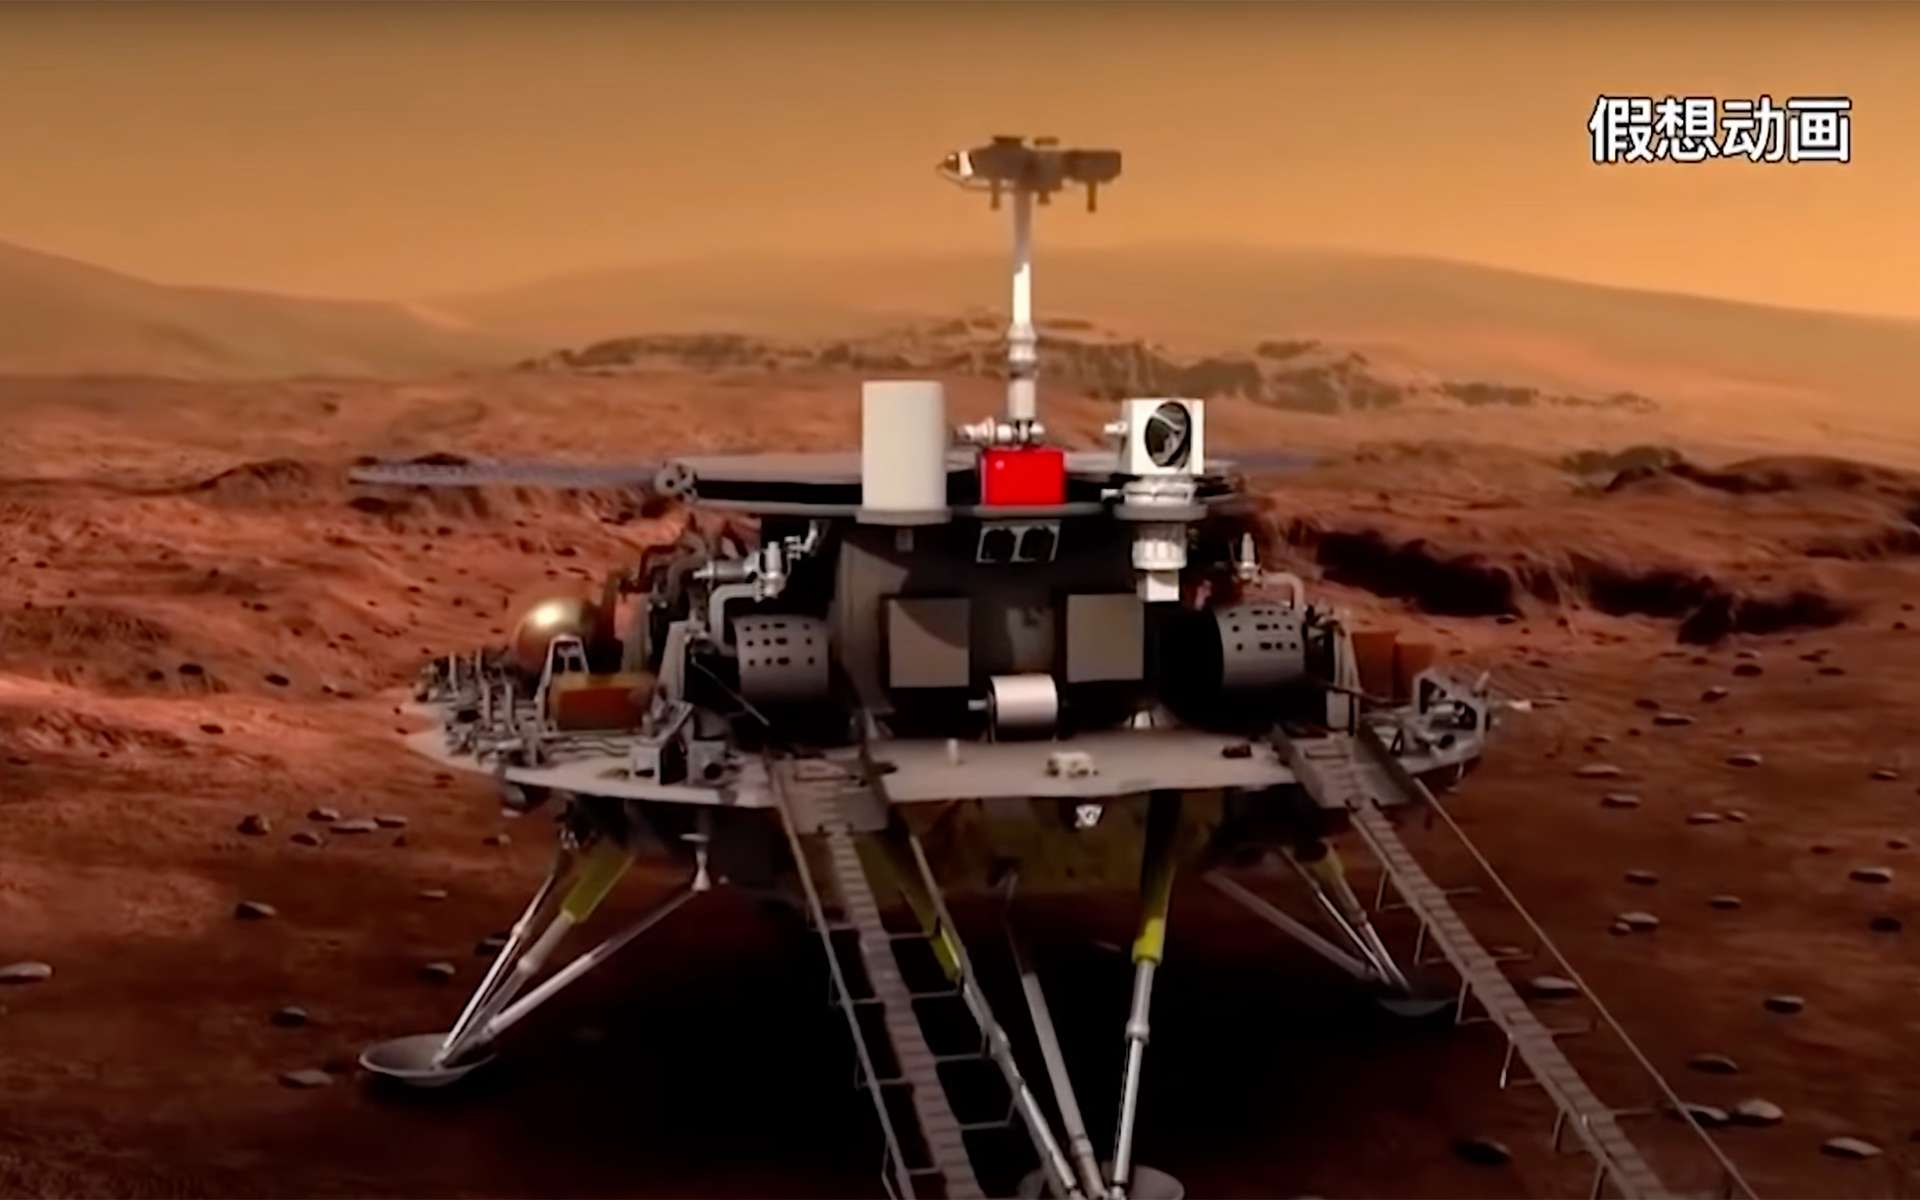 Une représentation artistique plutôt sommaire du rover chinois Zhurong qui s'est posé sur Mars avec succès le 15 mai 2021. © CNSA, YouTube